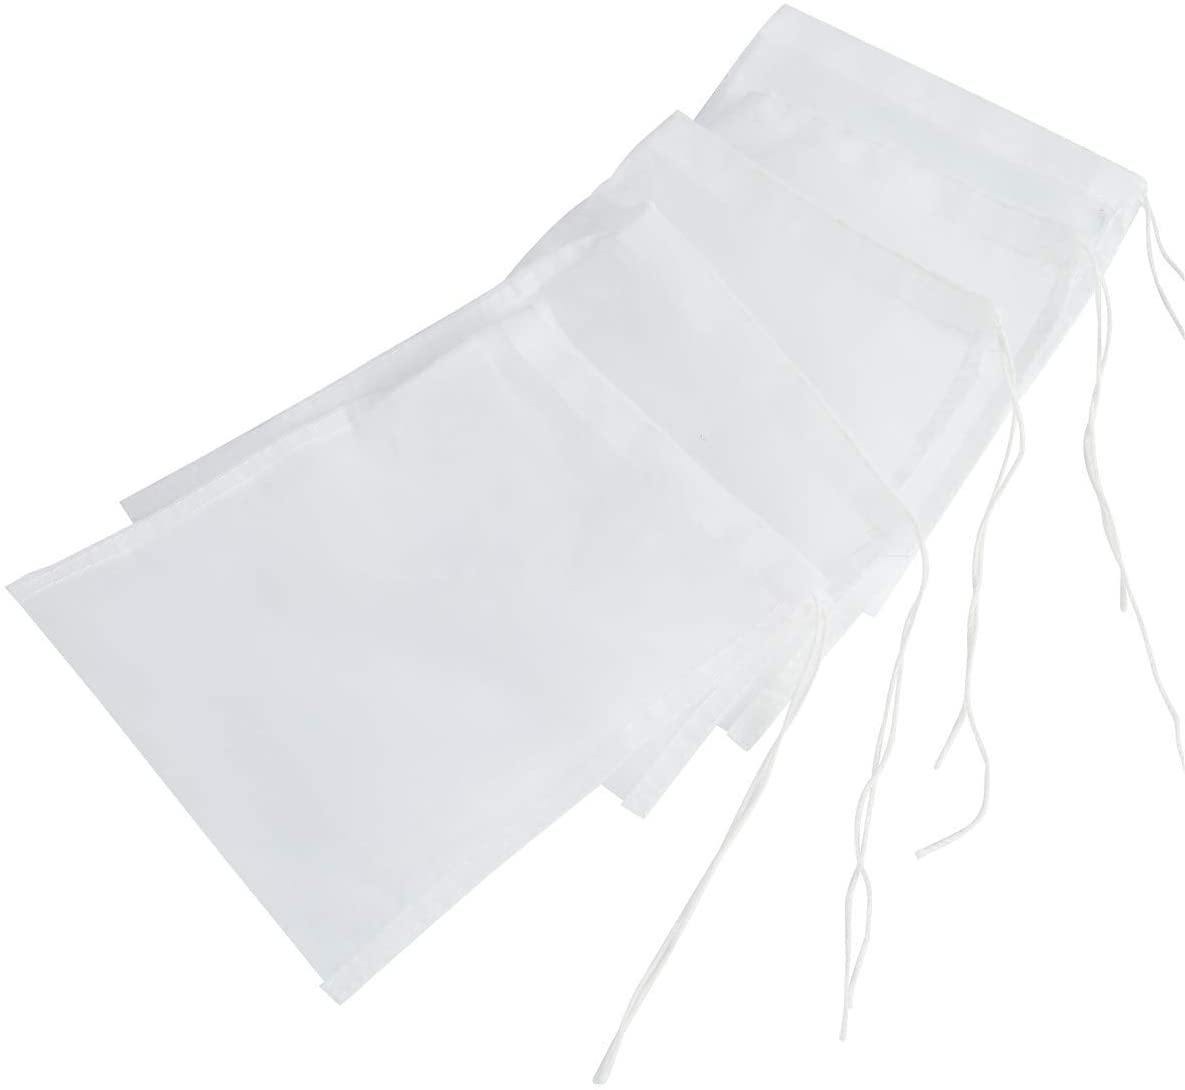  SLSON - Bolsas de Filtro para Acuario (5 Unidades, 180 micrones, Reutilizables, Nailon), Color Blanco 